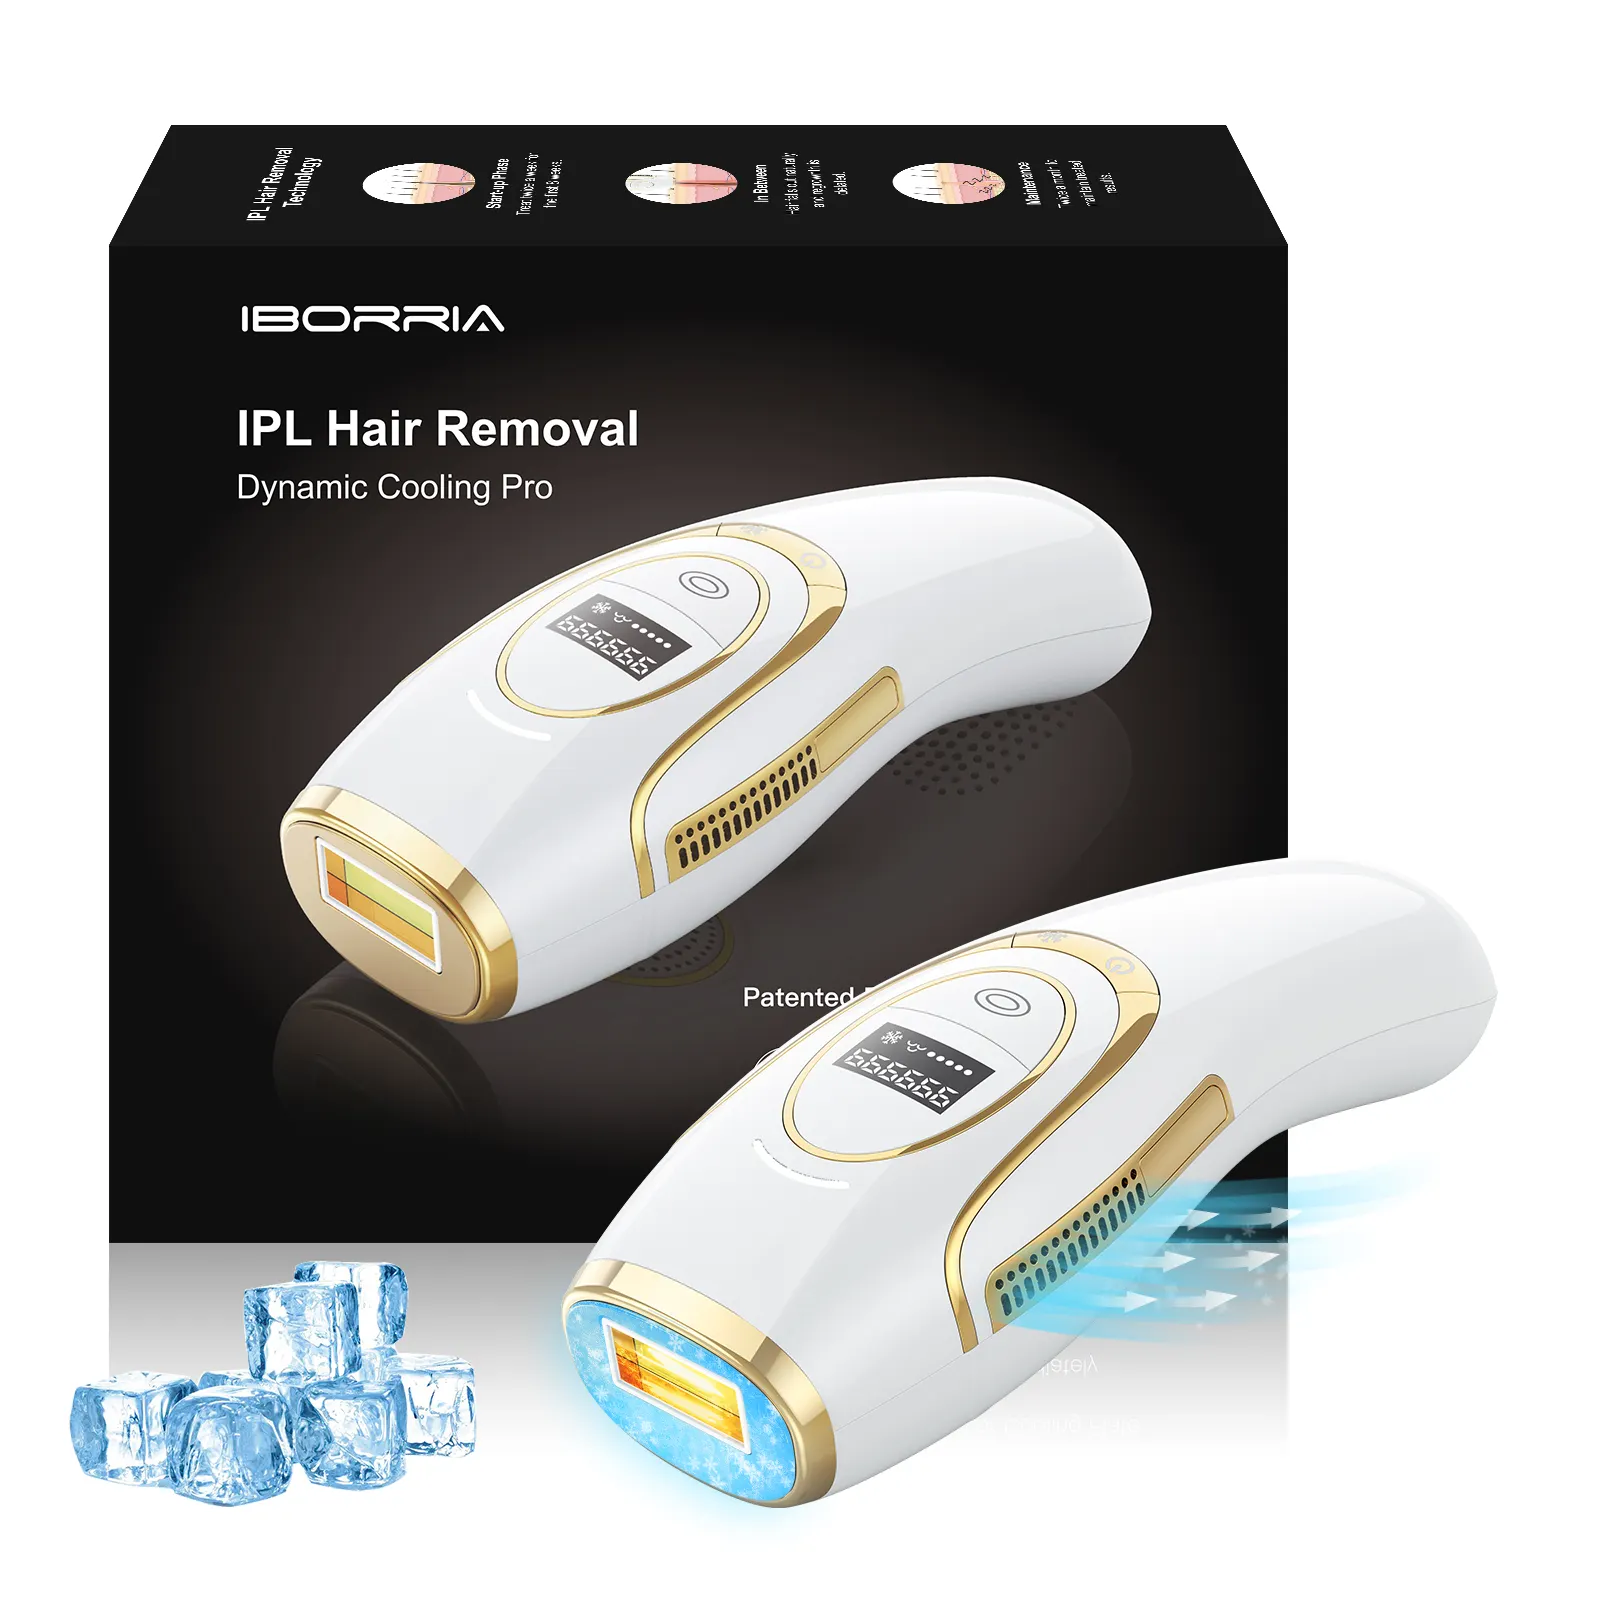 Dispositivo de remoção de pelos iborria, dispositivo br223 510k ipl com laser, alemanha, dispositivo ipl para remoção de pelos